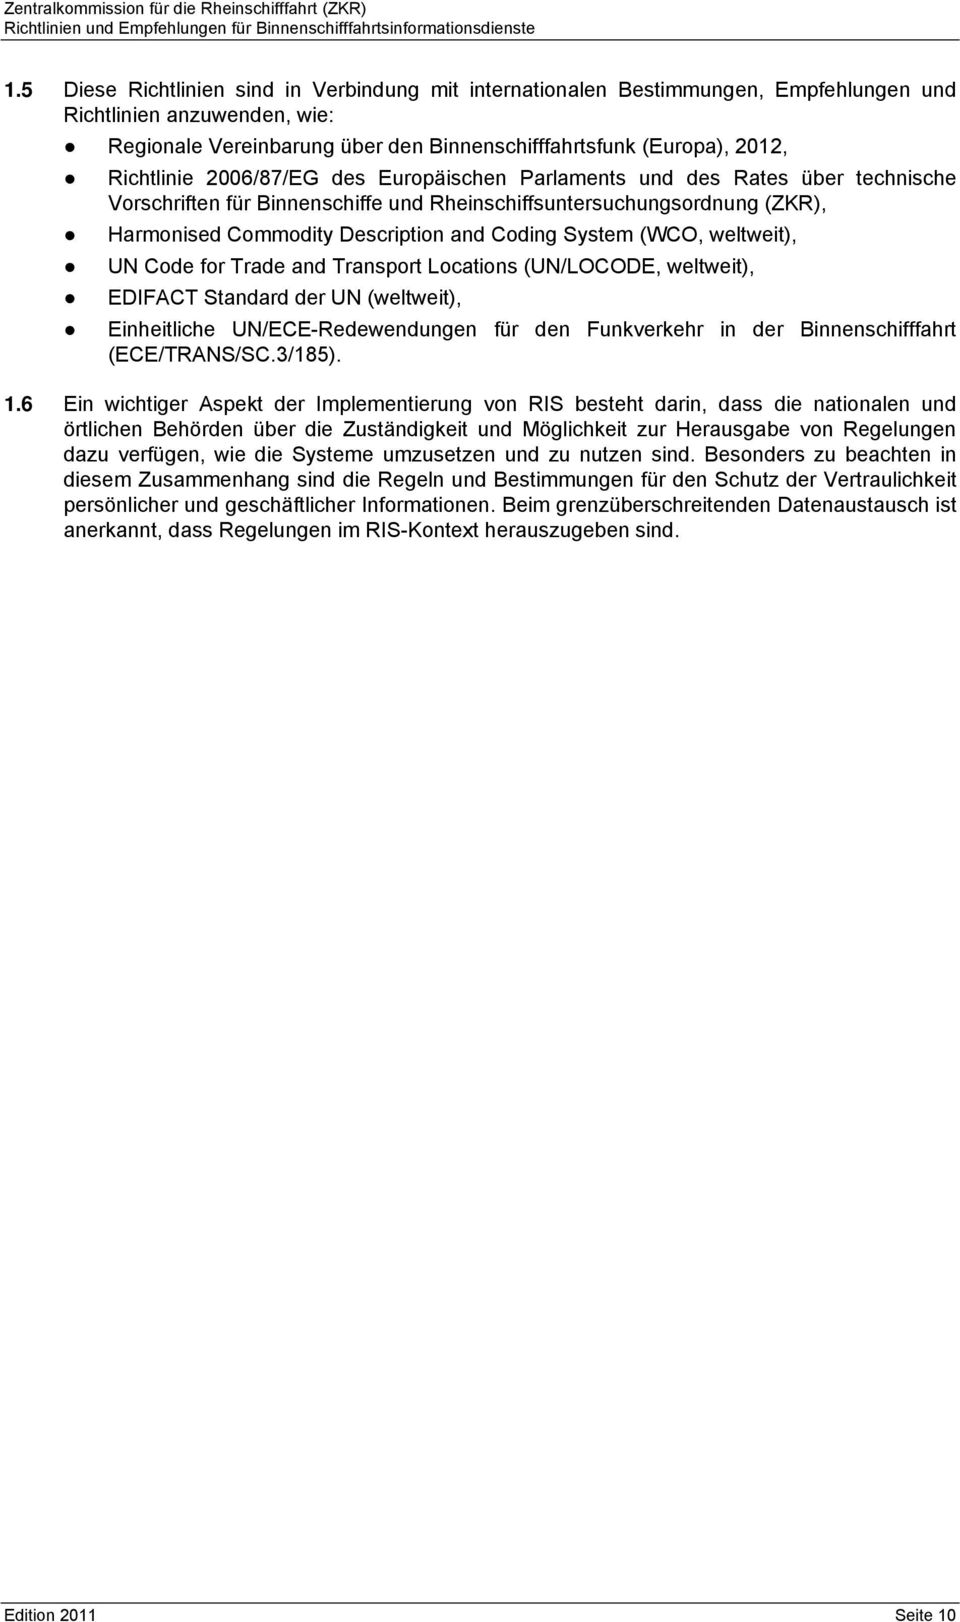 Richtlinie 2006/87/EG des Europäischen Parlaments und des Rates über technische Vorschriften für Binnenschiffe und Rheinschiffsuntersuchungsordnung (ZKR), Harmonised Commodity Description and Coding